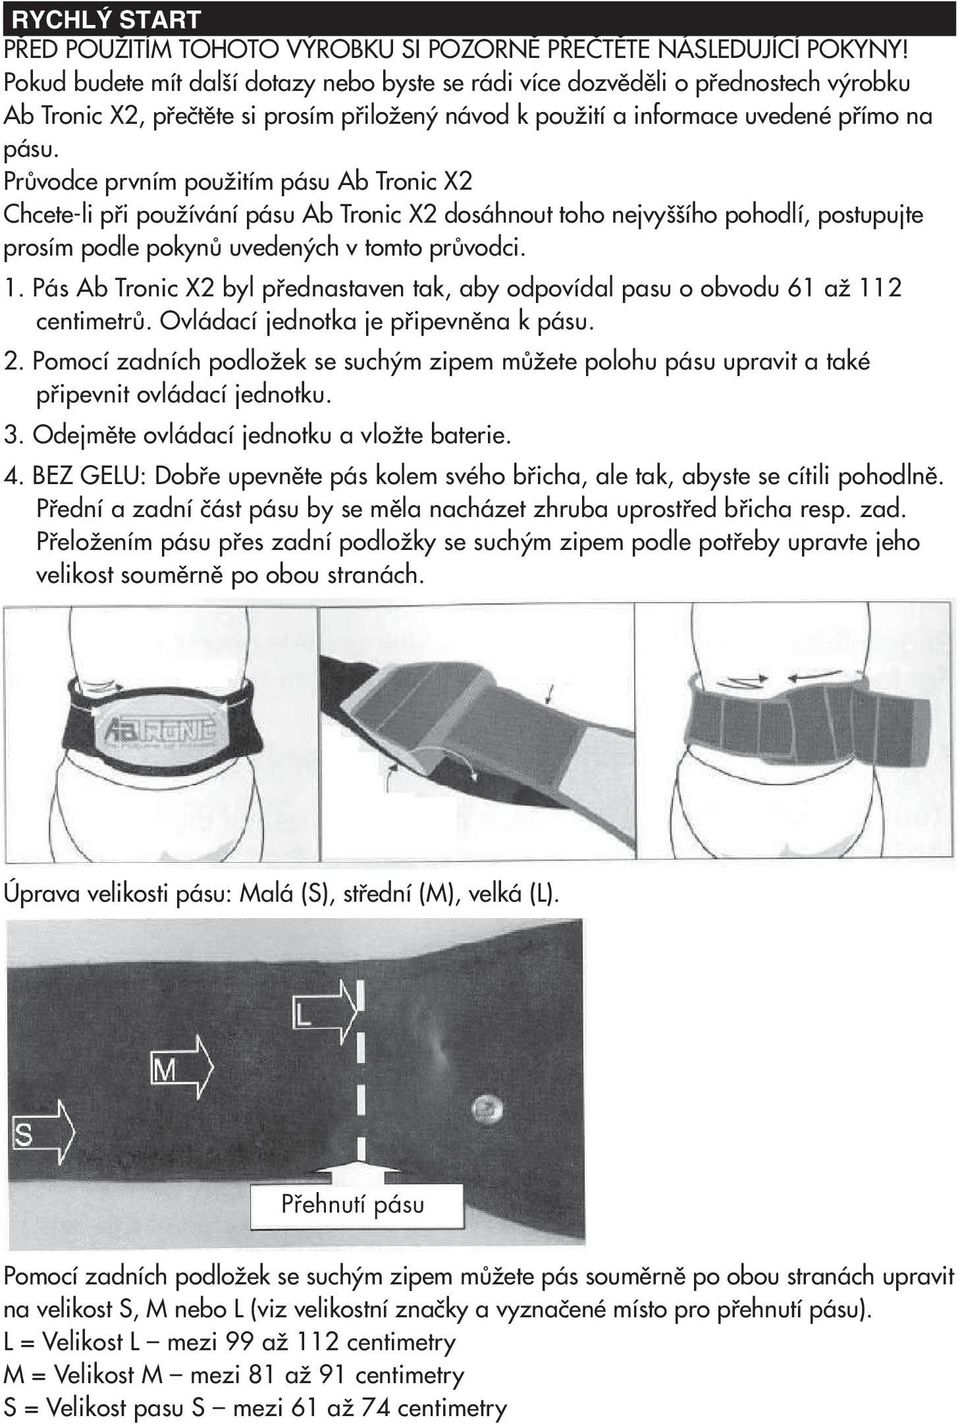 Ab Tronic X2. Masážní pás. Před použitím si pozorně přečtěte tyto  instrukce. - PDF Free Download